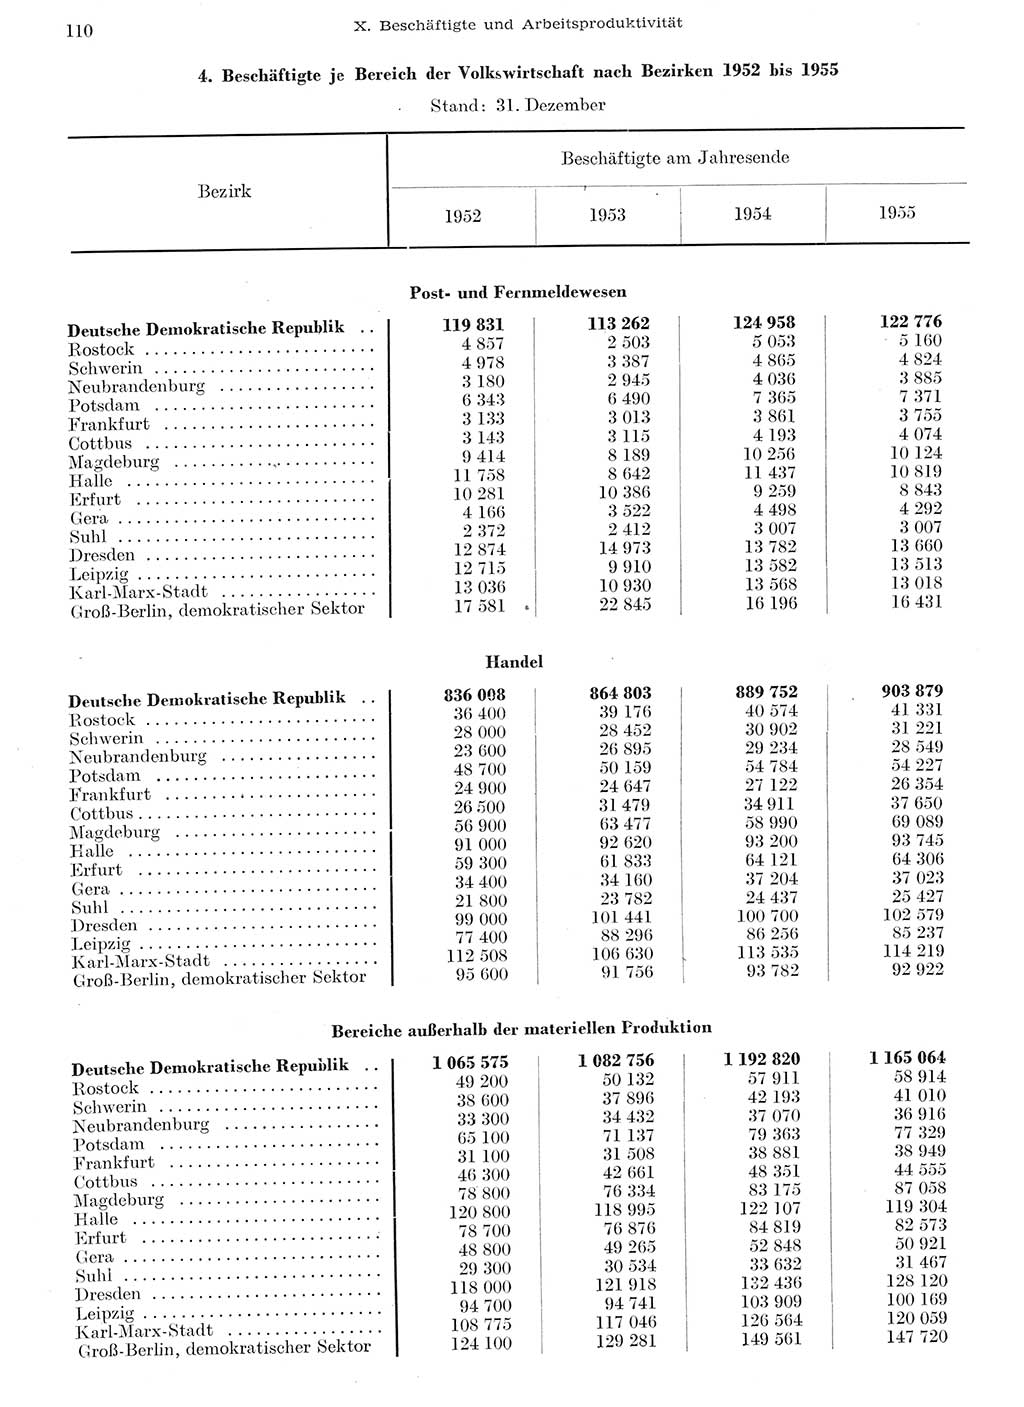 Statistisches Jahrbuch der Deutschen Demokratischen Republik (DDR) 1955, Seite 110 (Stat. Jb. DDR 1955, S. 110)